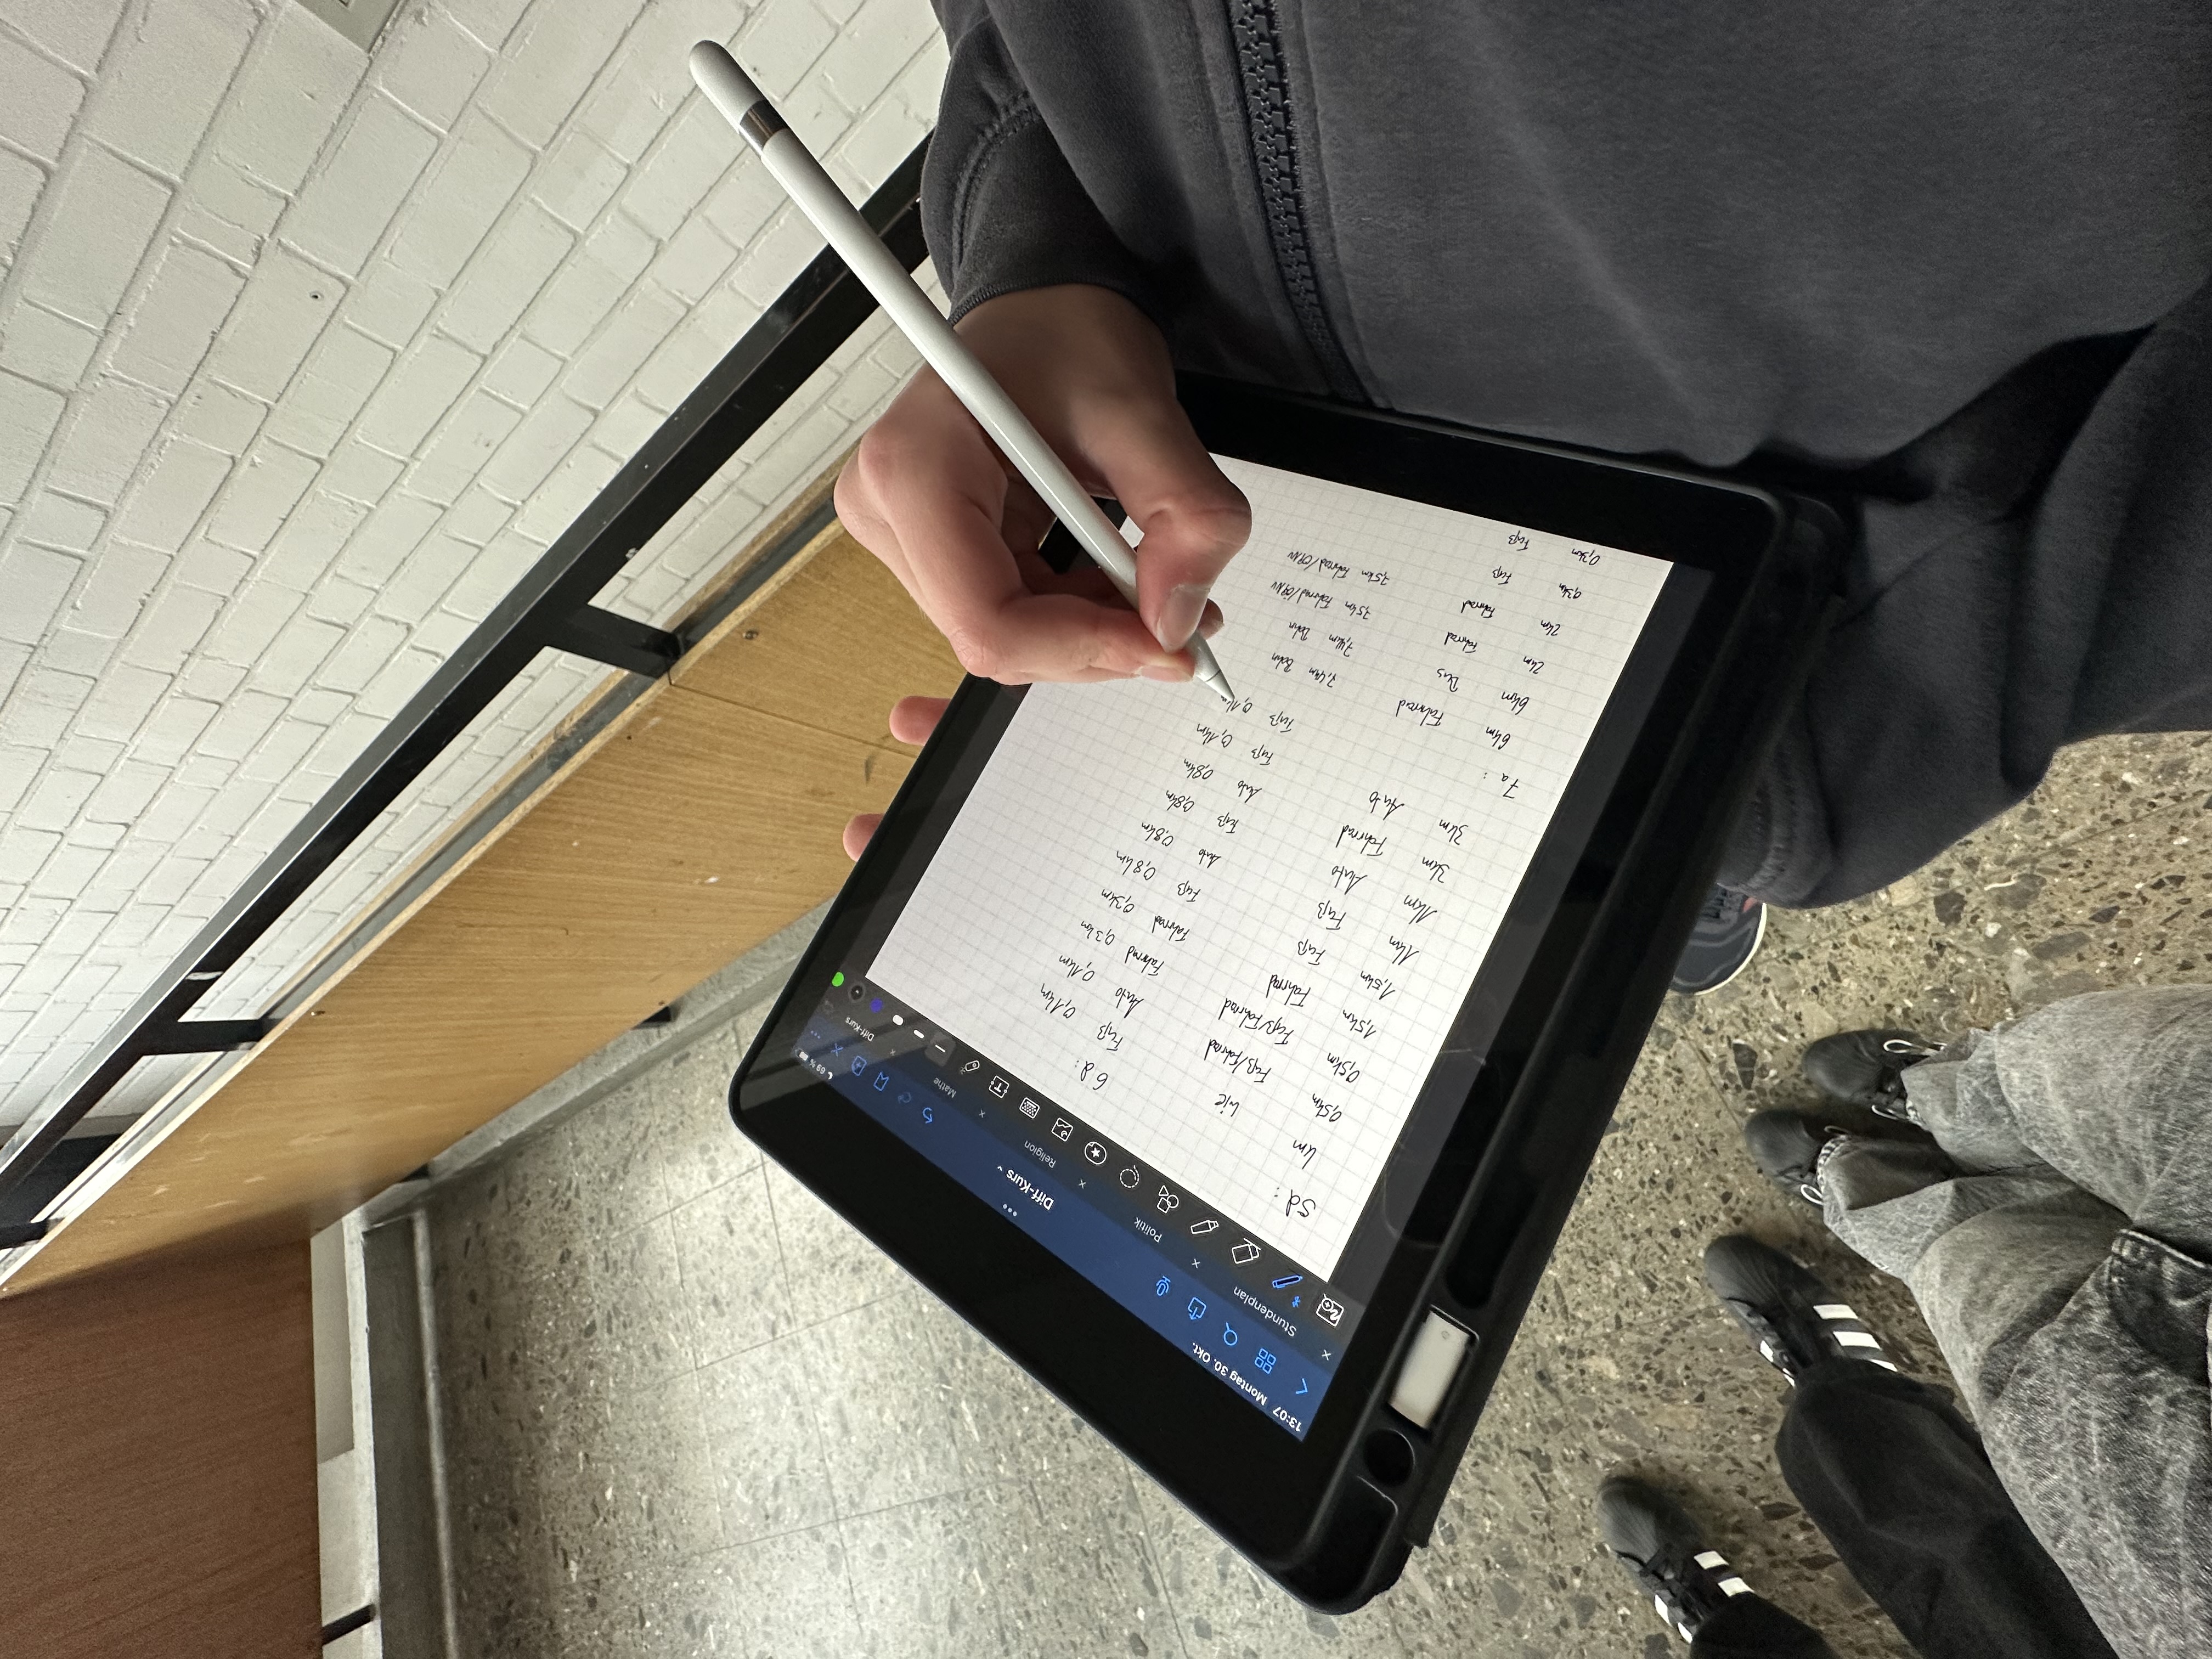 In diesem Bild sieht man ein Teil der Antworten von Schüler*innen, die gerade auf einem Tablet dokumentiert werden. 